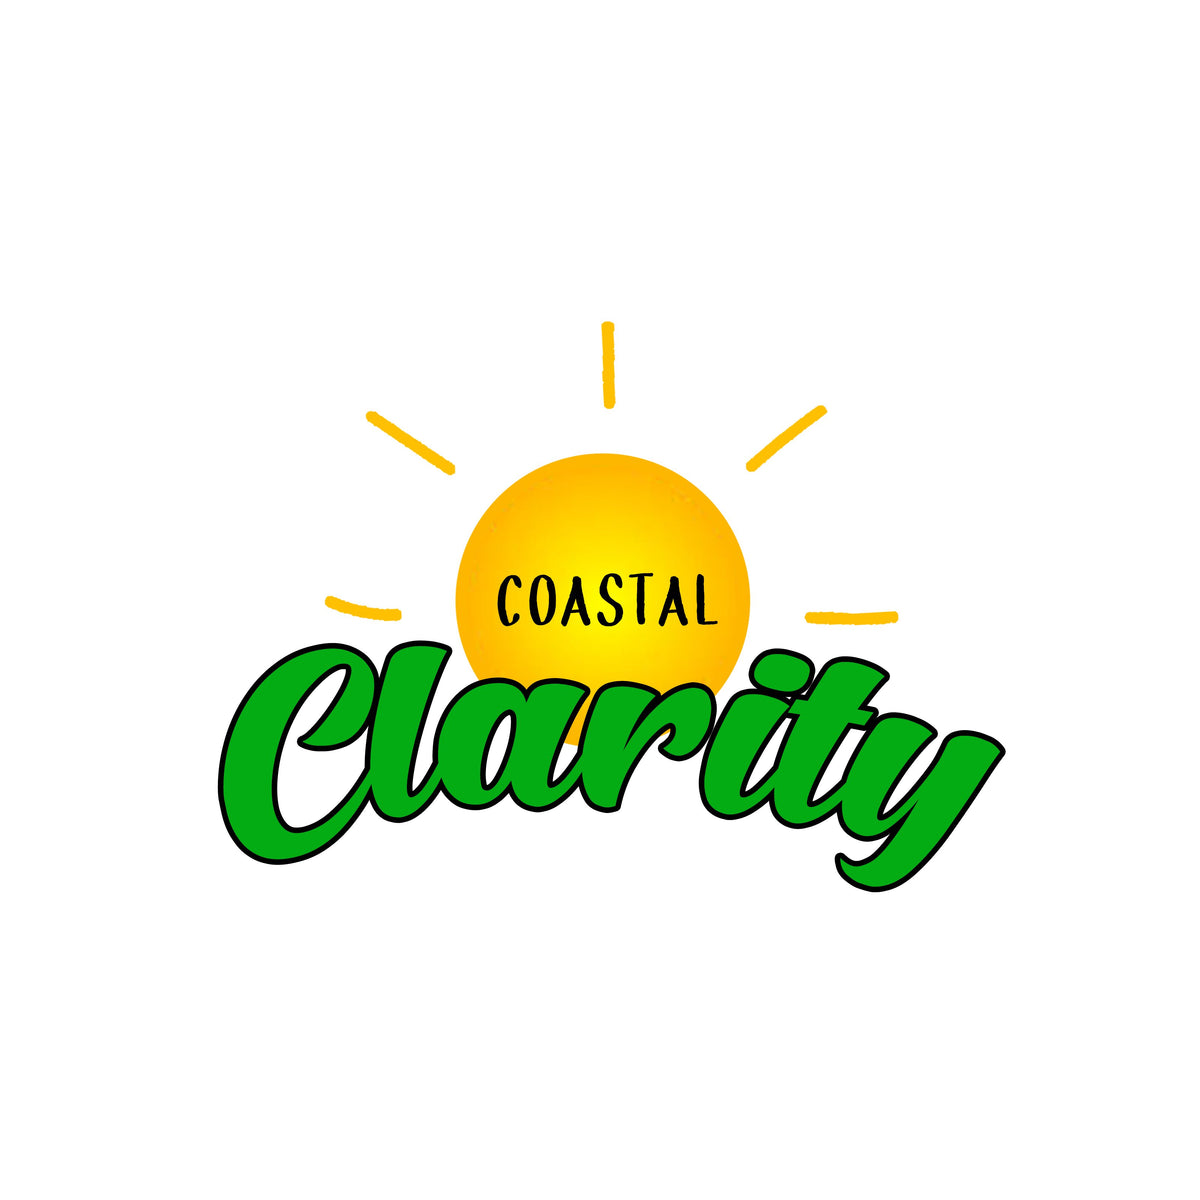 THC & Coastal Clarity